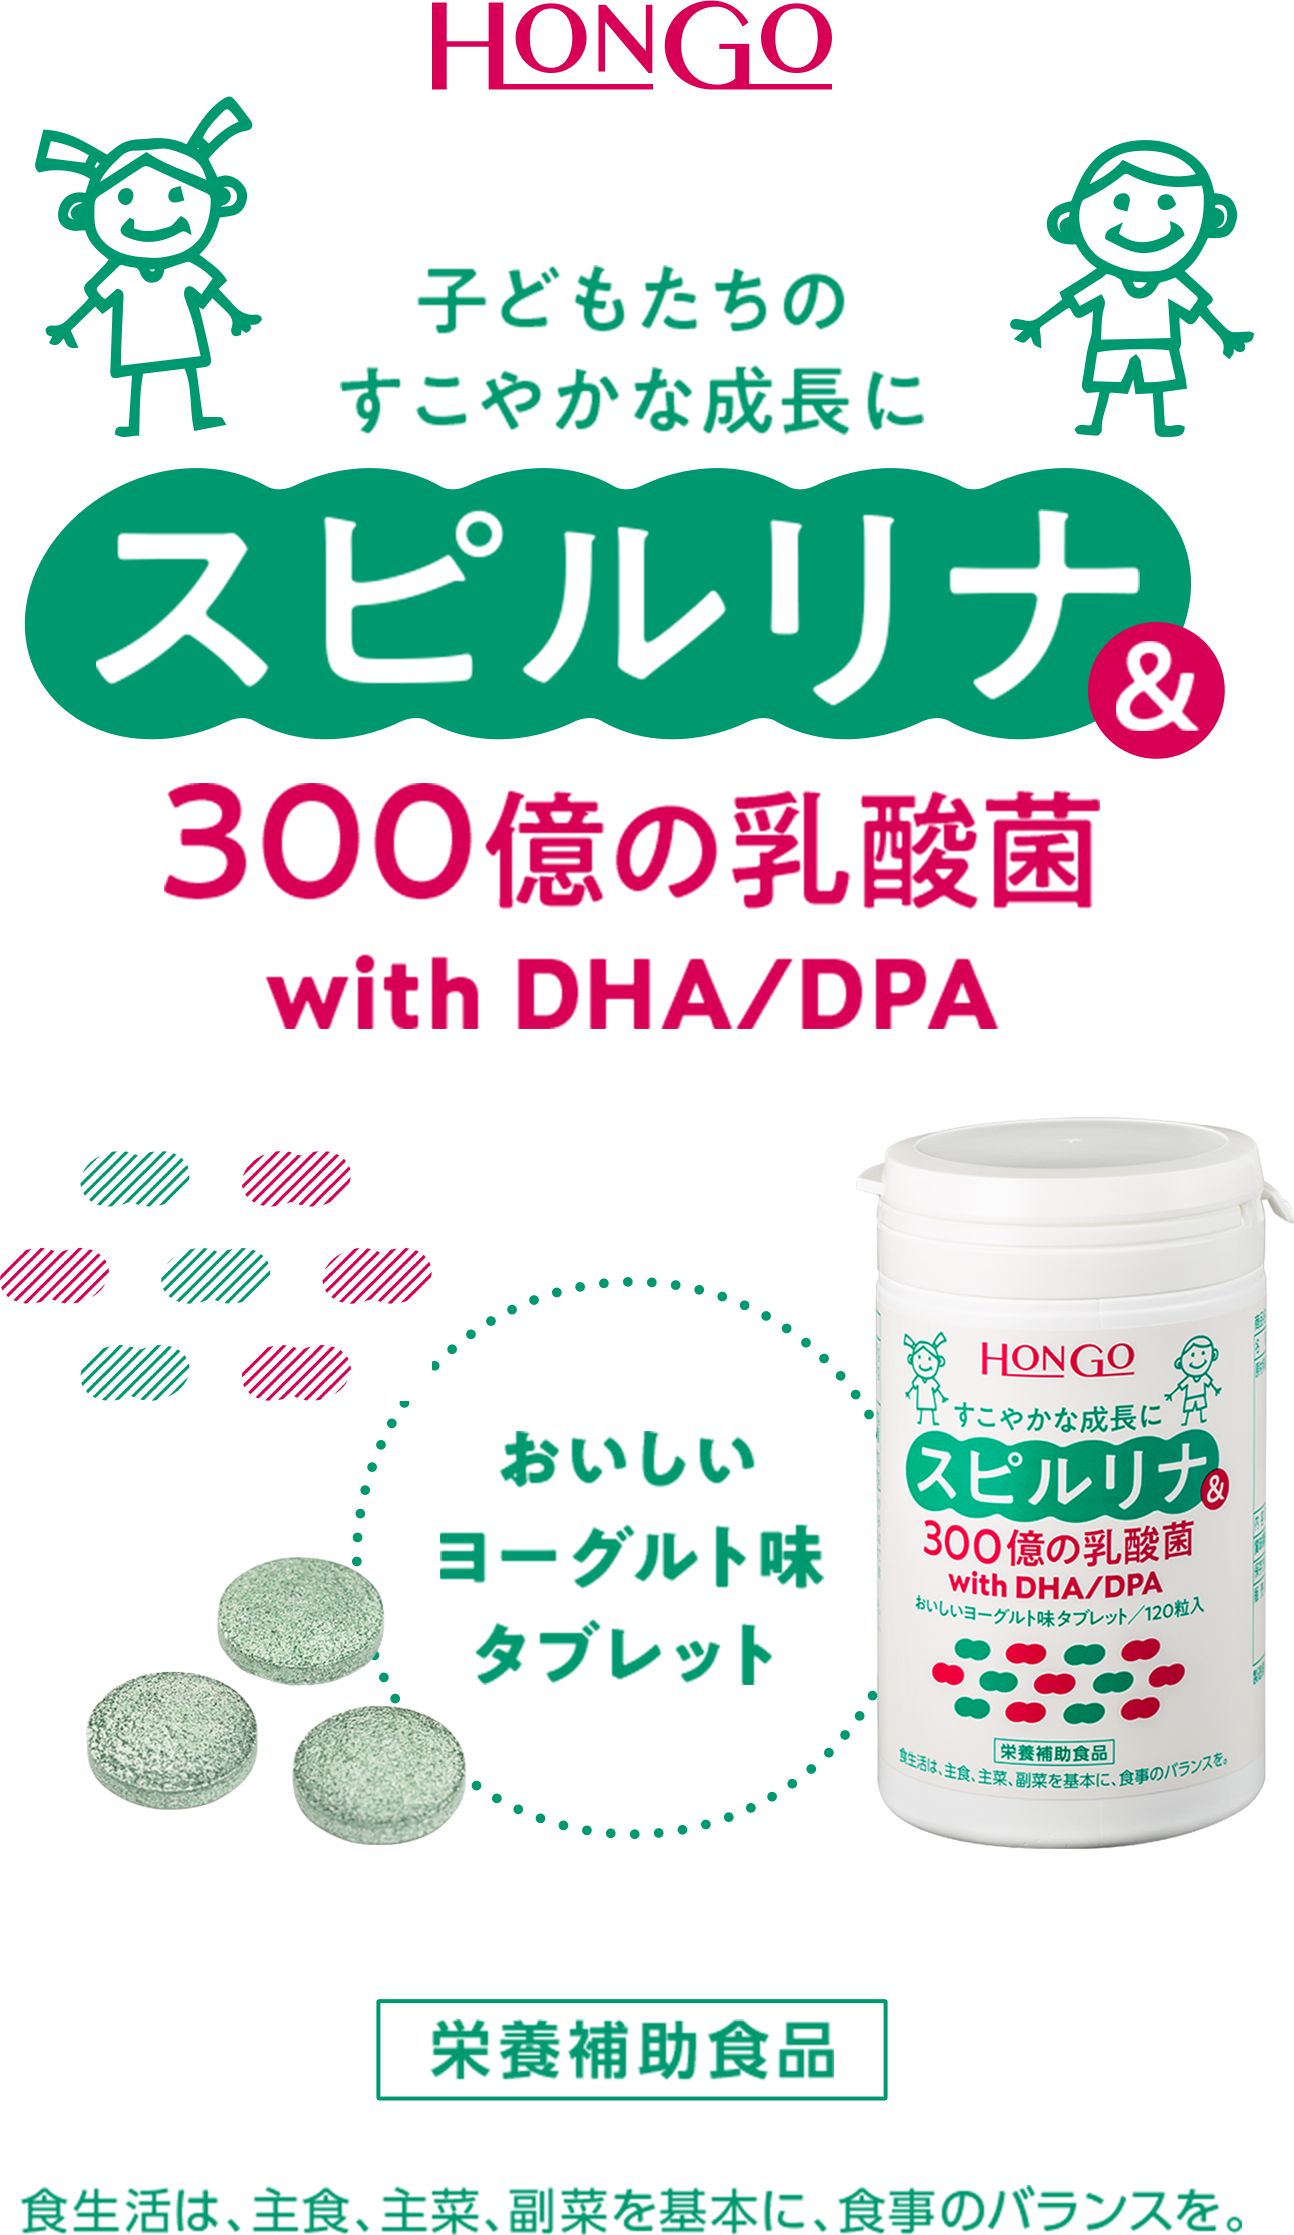 スピルリナ&300億の乳酸菌 withDHA/DPA | HONGO HEALTH&BEAUTY COMPANY